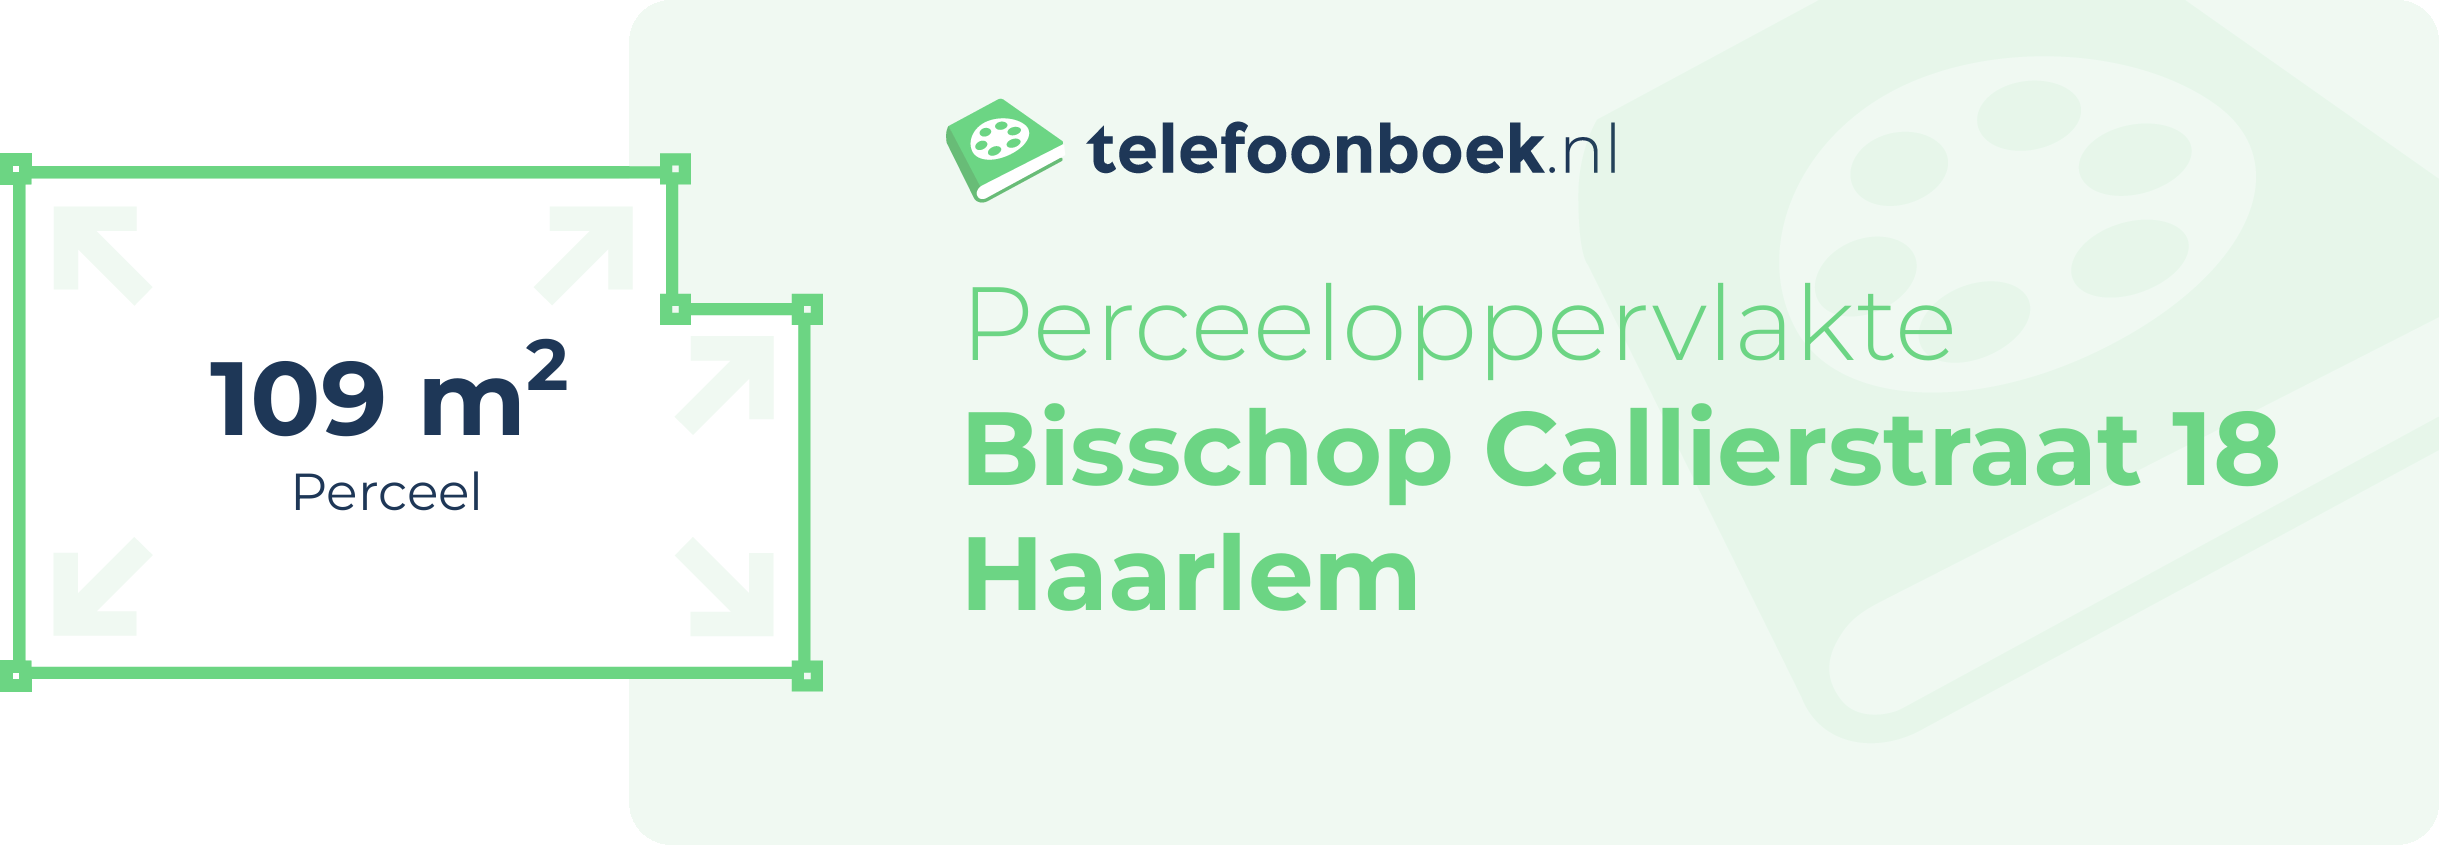 Perceeloppervlakte Bisschop Callierstraat 18 Haarlem